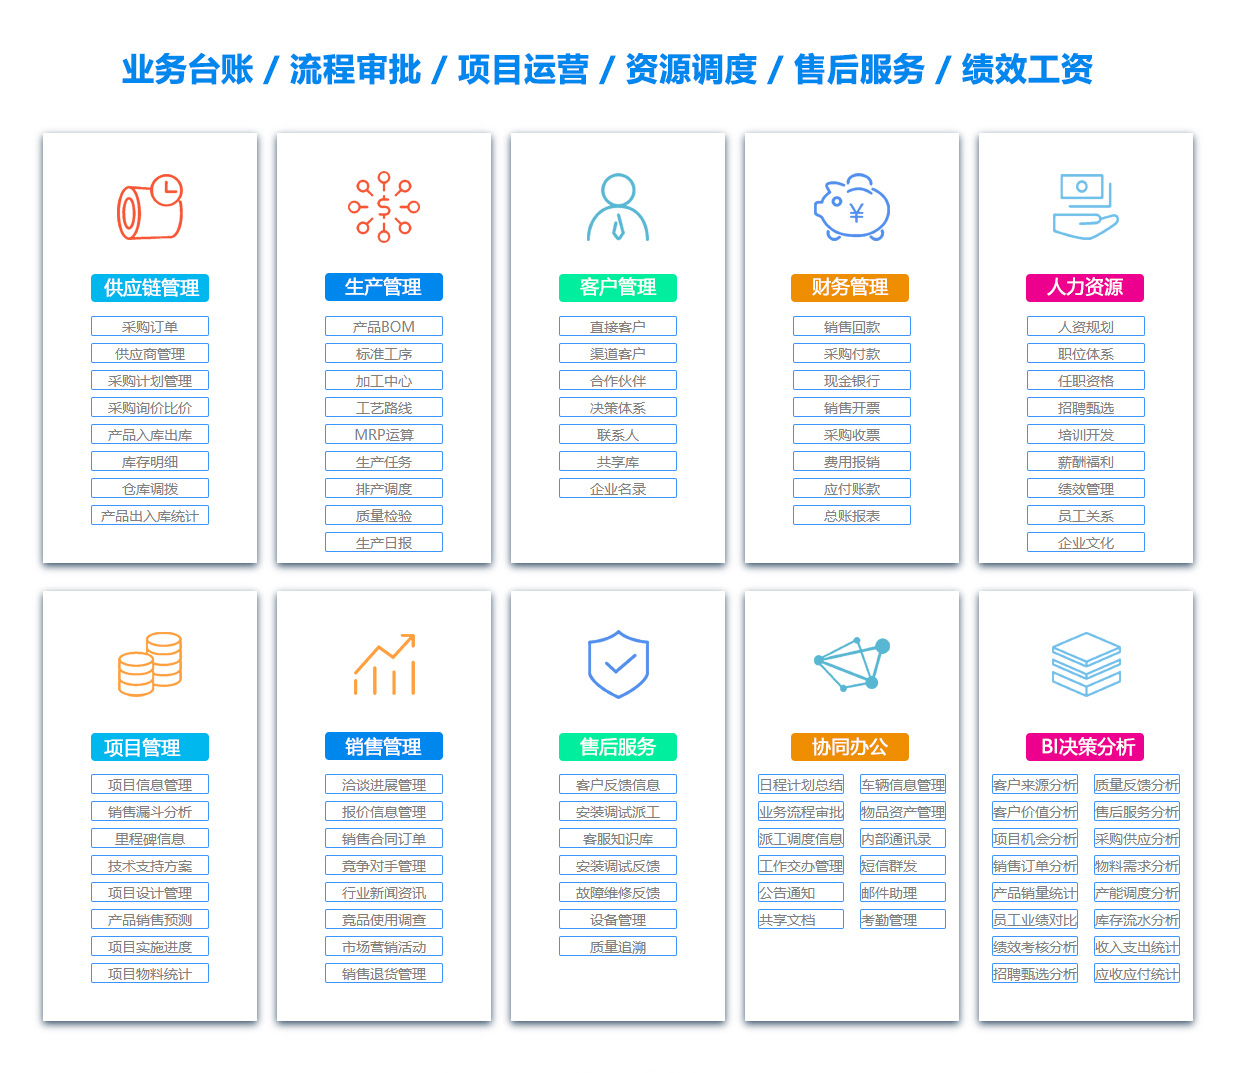 上海MIS:信息管理系统